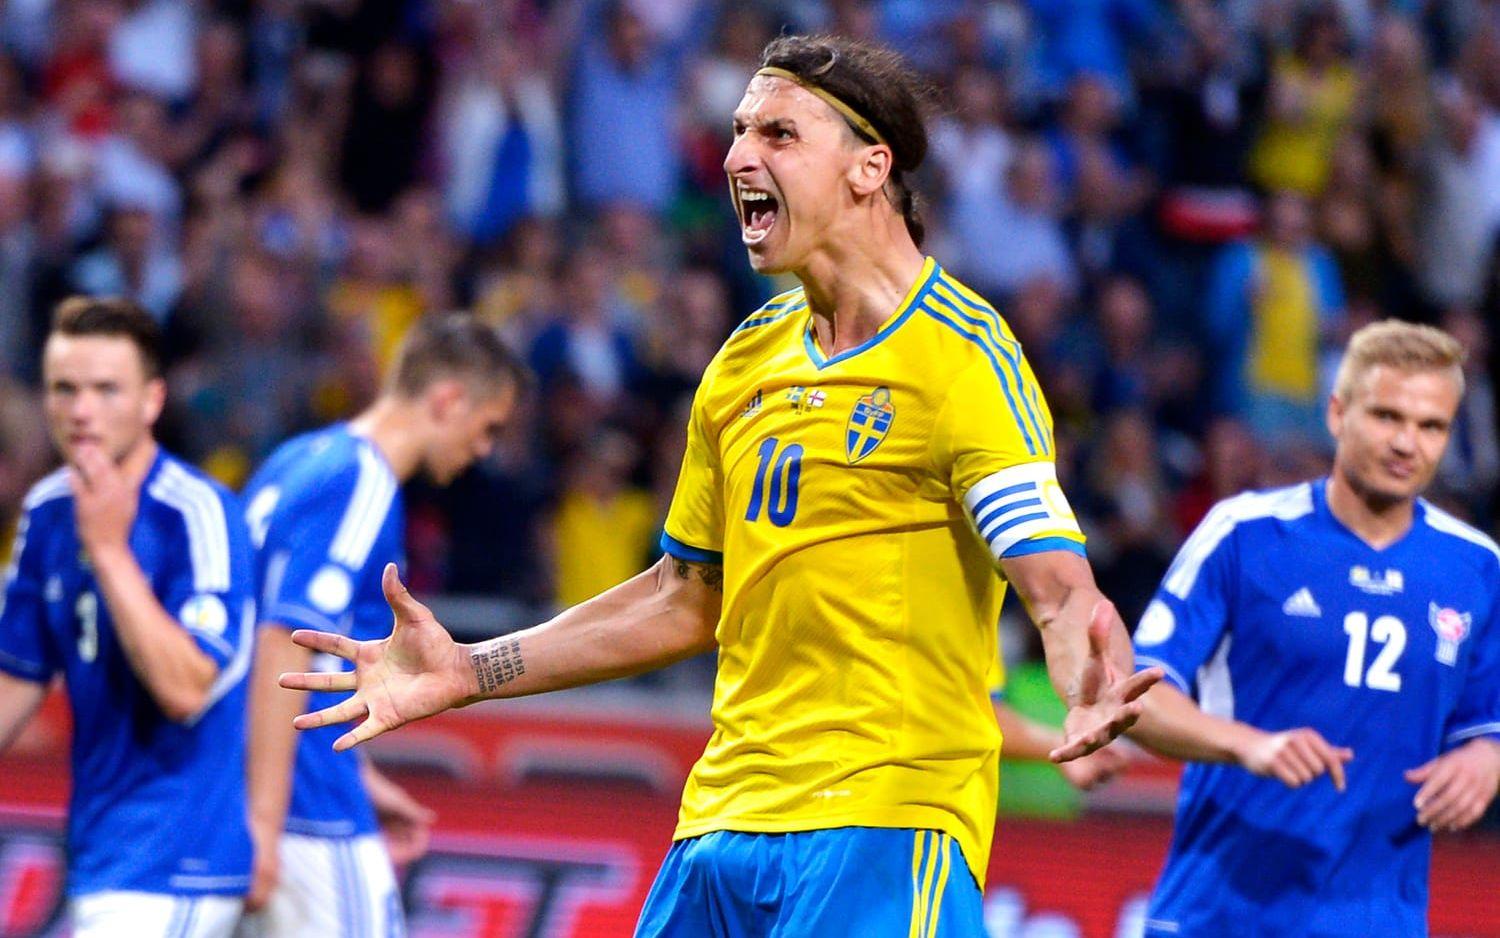 2013: Färöarna (h) 2-0, VM-kval Zlatan Ibrahimovic 2. Bild: Bildbyrån.